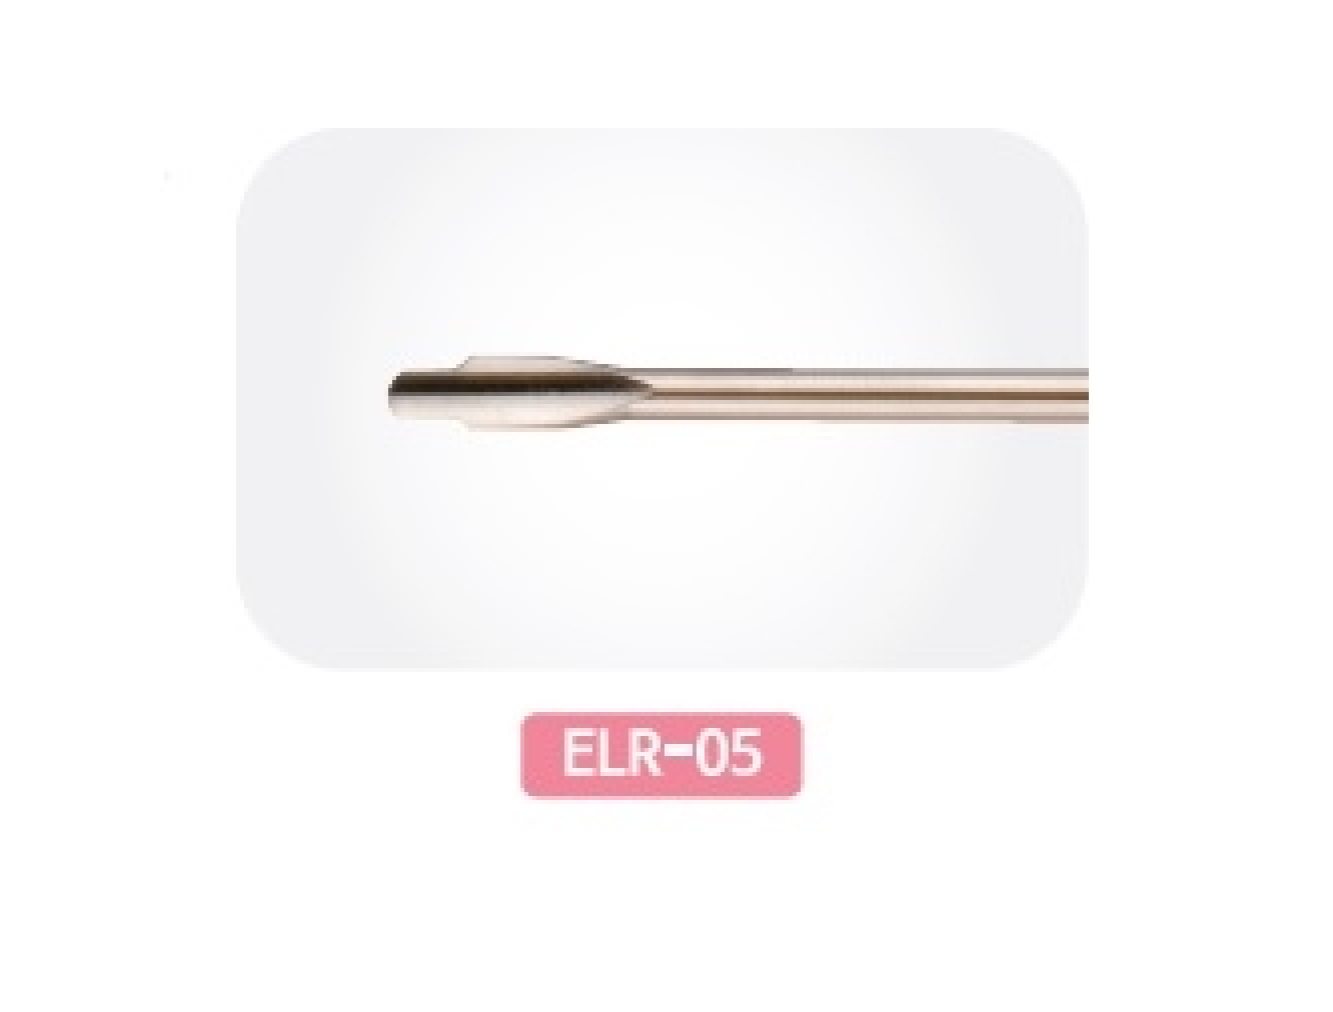 ELR-05 Стоматологическое Сменное лезвие: Люксатор-периотом с двойной кромкой 3,0/4,6 мм прямой для фронтальных зубов, Mr.Curette Tech, Южная Корея